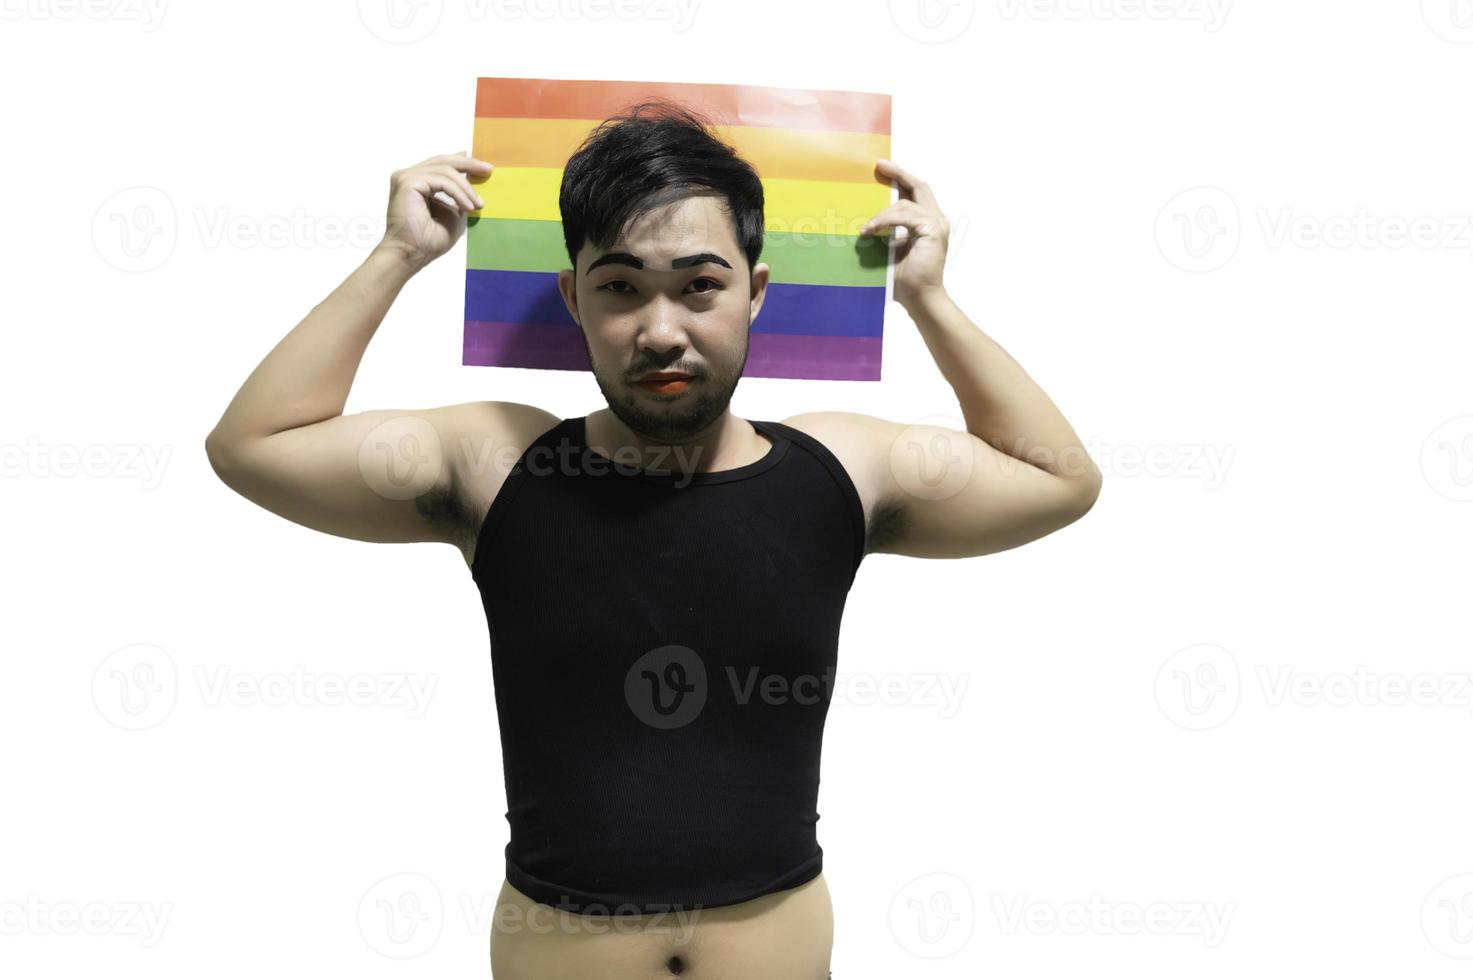 concepto del mes del orgullo lgbt, hombre guapo asiático maquillado y vestido con ropa de mujer, día de la libertad gay, retrato de no binario sobre fondo blanco foto